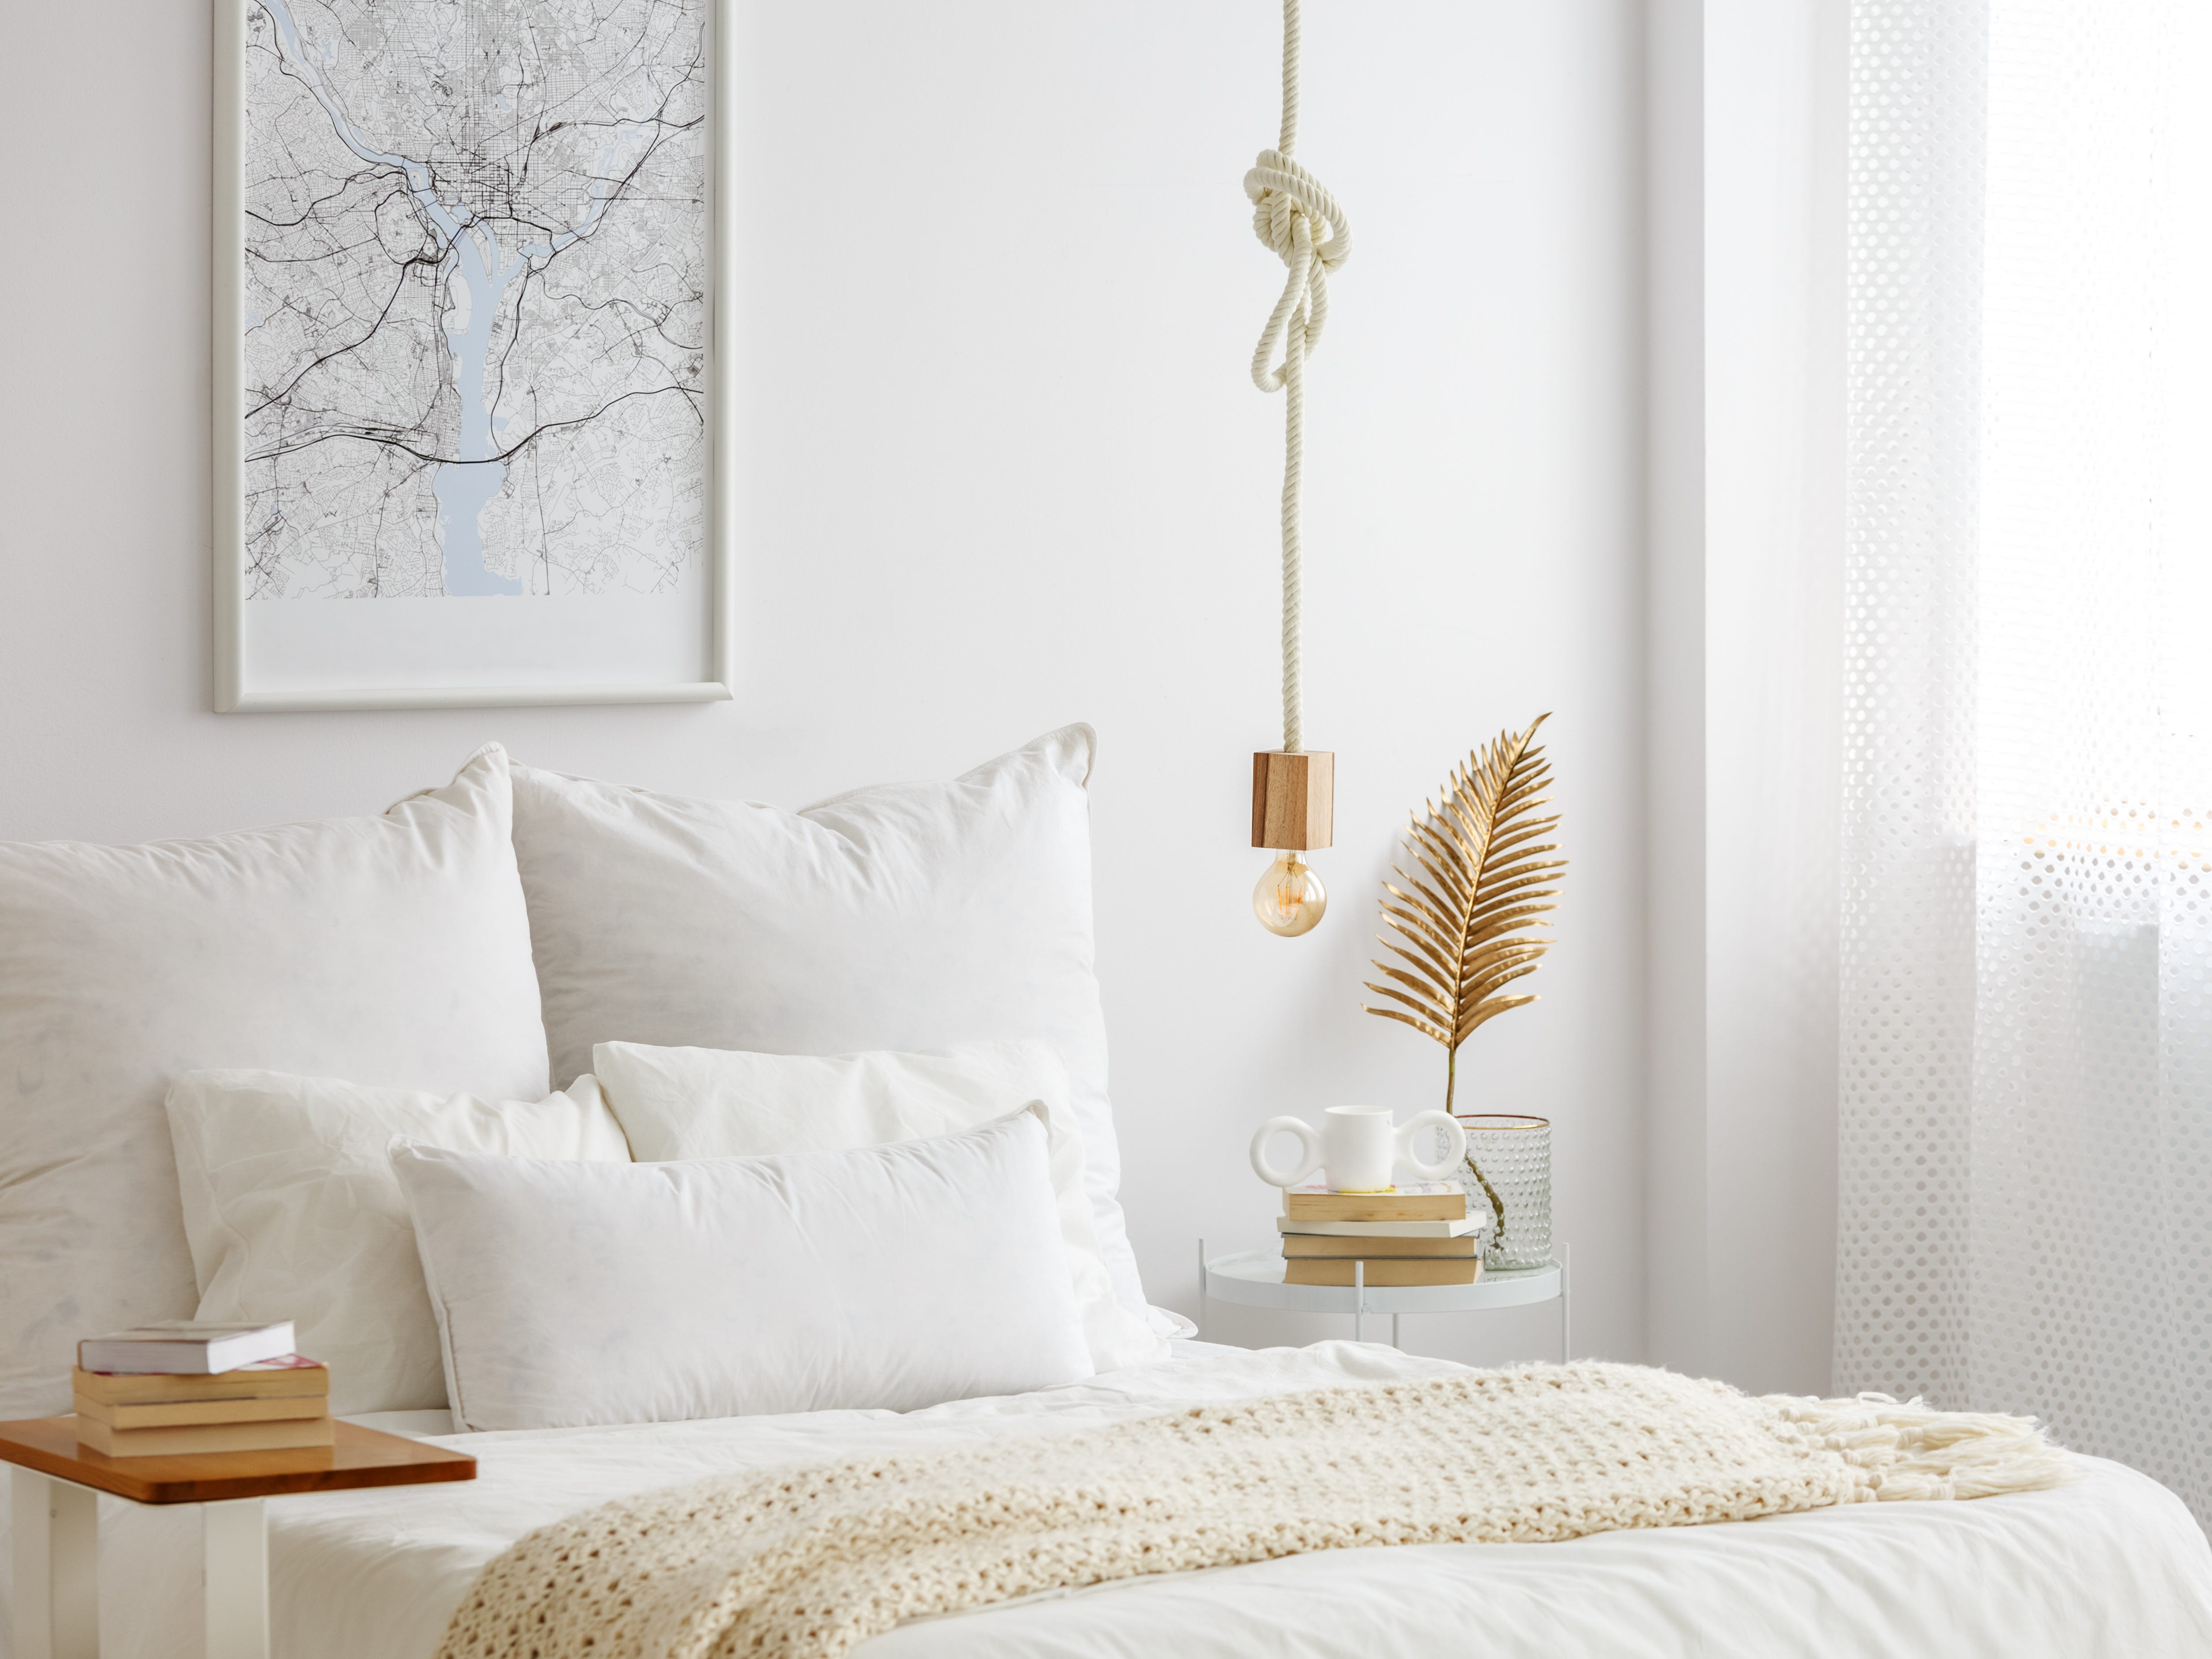 Ein Schlafzimmer mit weißen Wänden, weißen Vorhängen und weißer Bettwäsche.  Über dem Bett hängt eine Glühbirne an einem Seil und neben dem Bett steht ein Beistelltisch mit Goldakzenten.